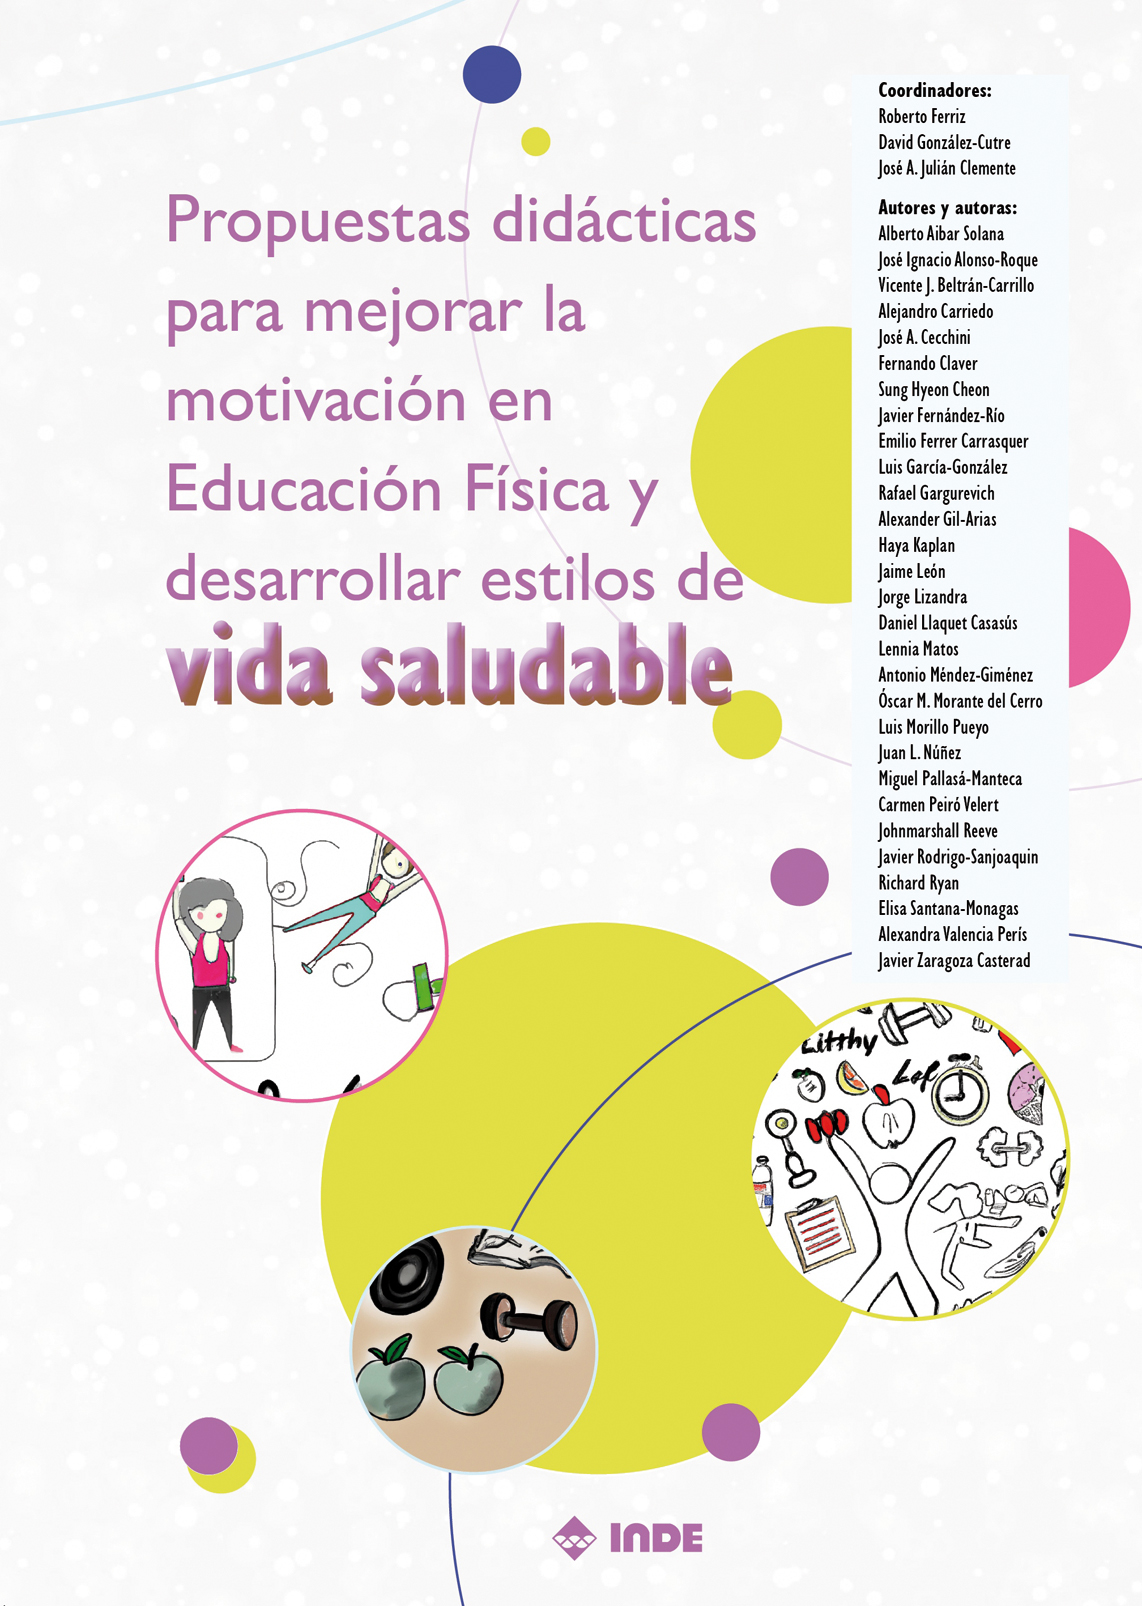 Imagen de portada del libro Propuestas didácticas para mejorar la motivación en educación física y desarrollar estilos de vida saludable